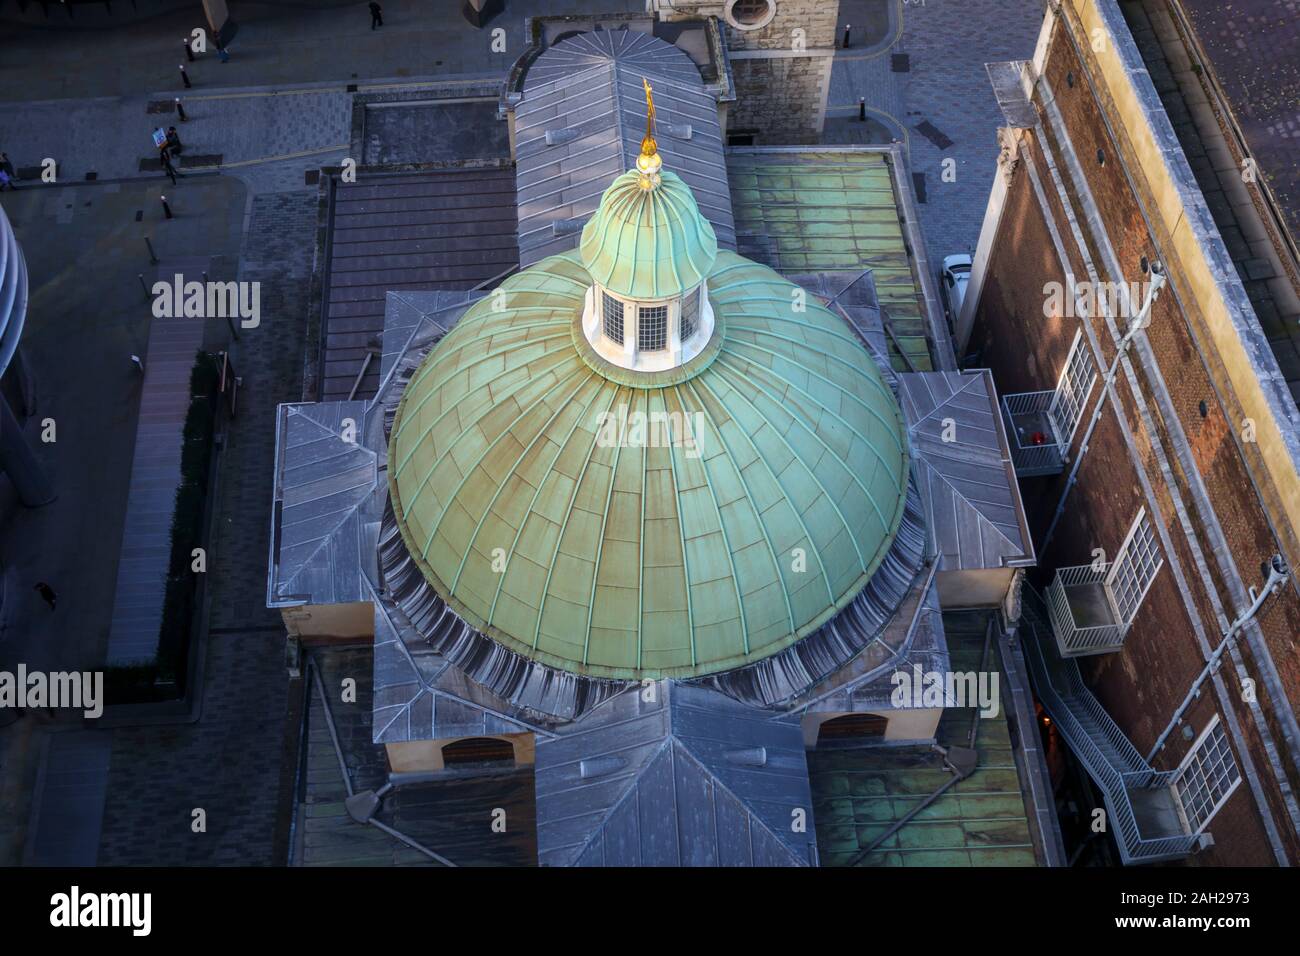 Vue de dessus de la coupole du bâtiment historique du xviie siècle Sir Christopher Wren, l'église St Stephen Walbrook, City of London, EC4 Banque D'Images